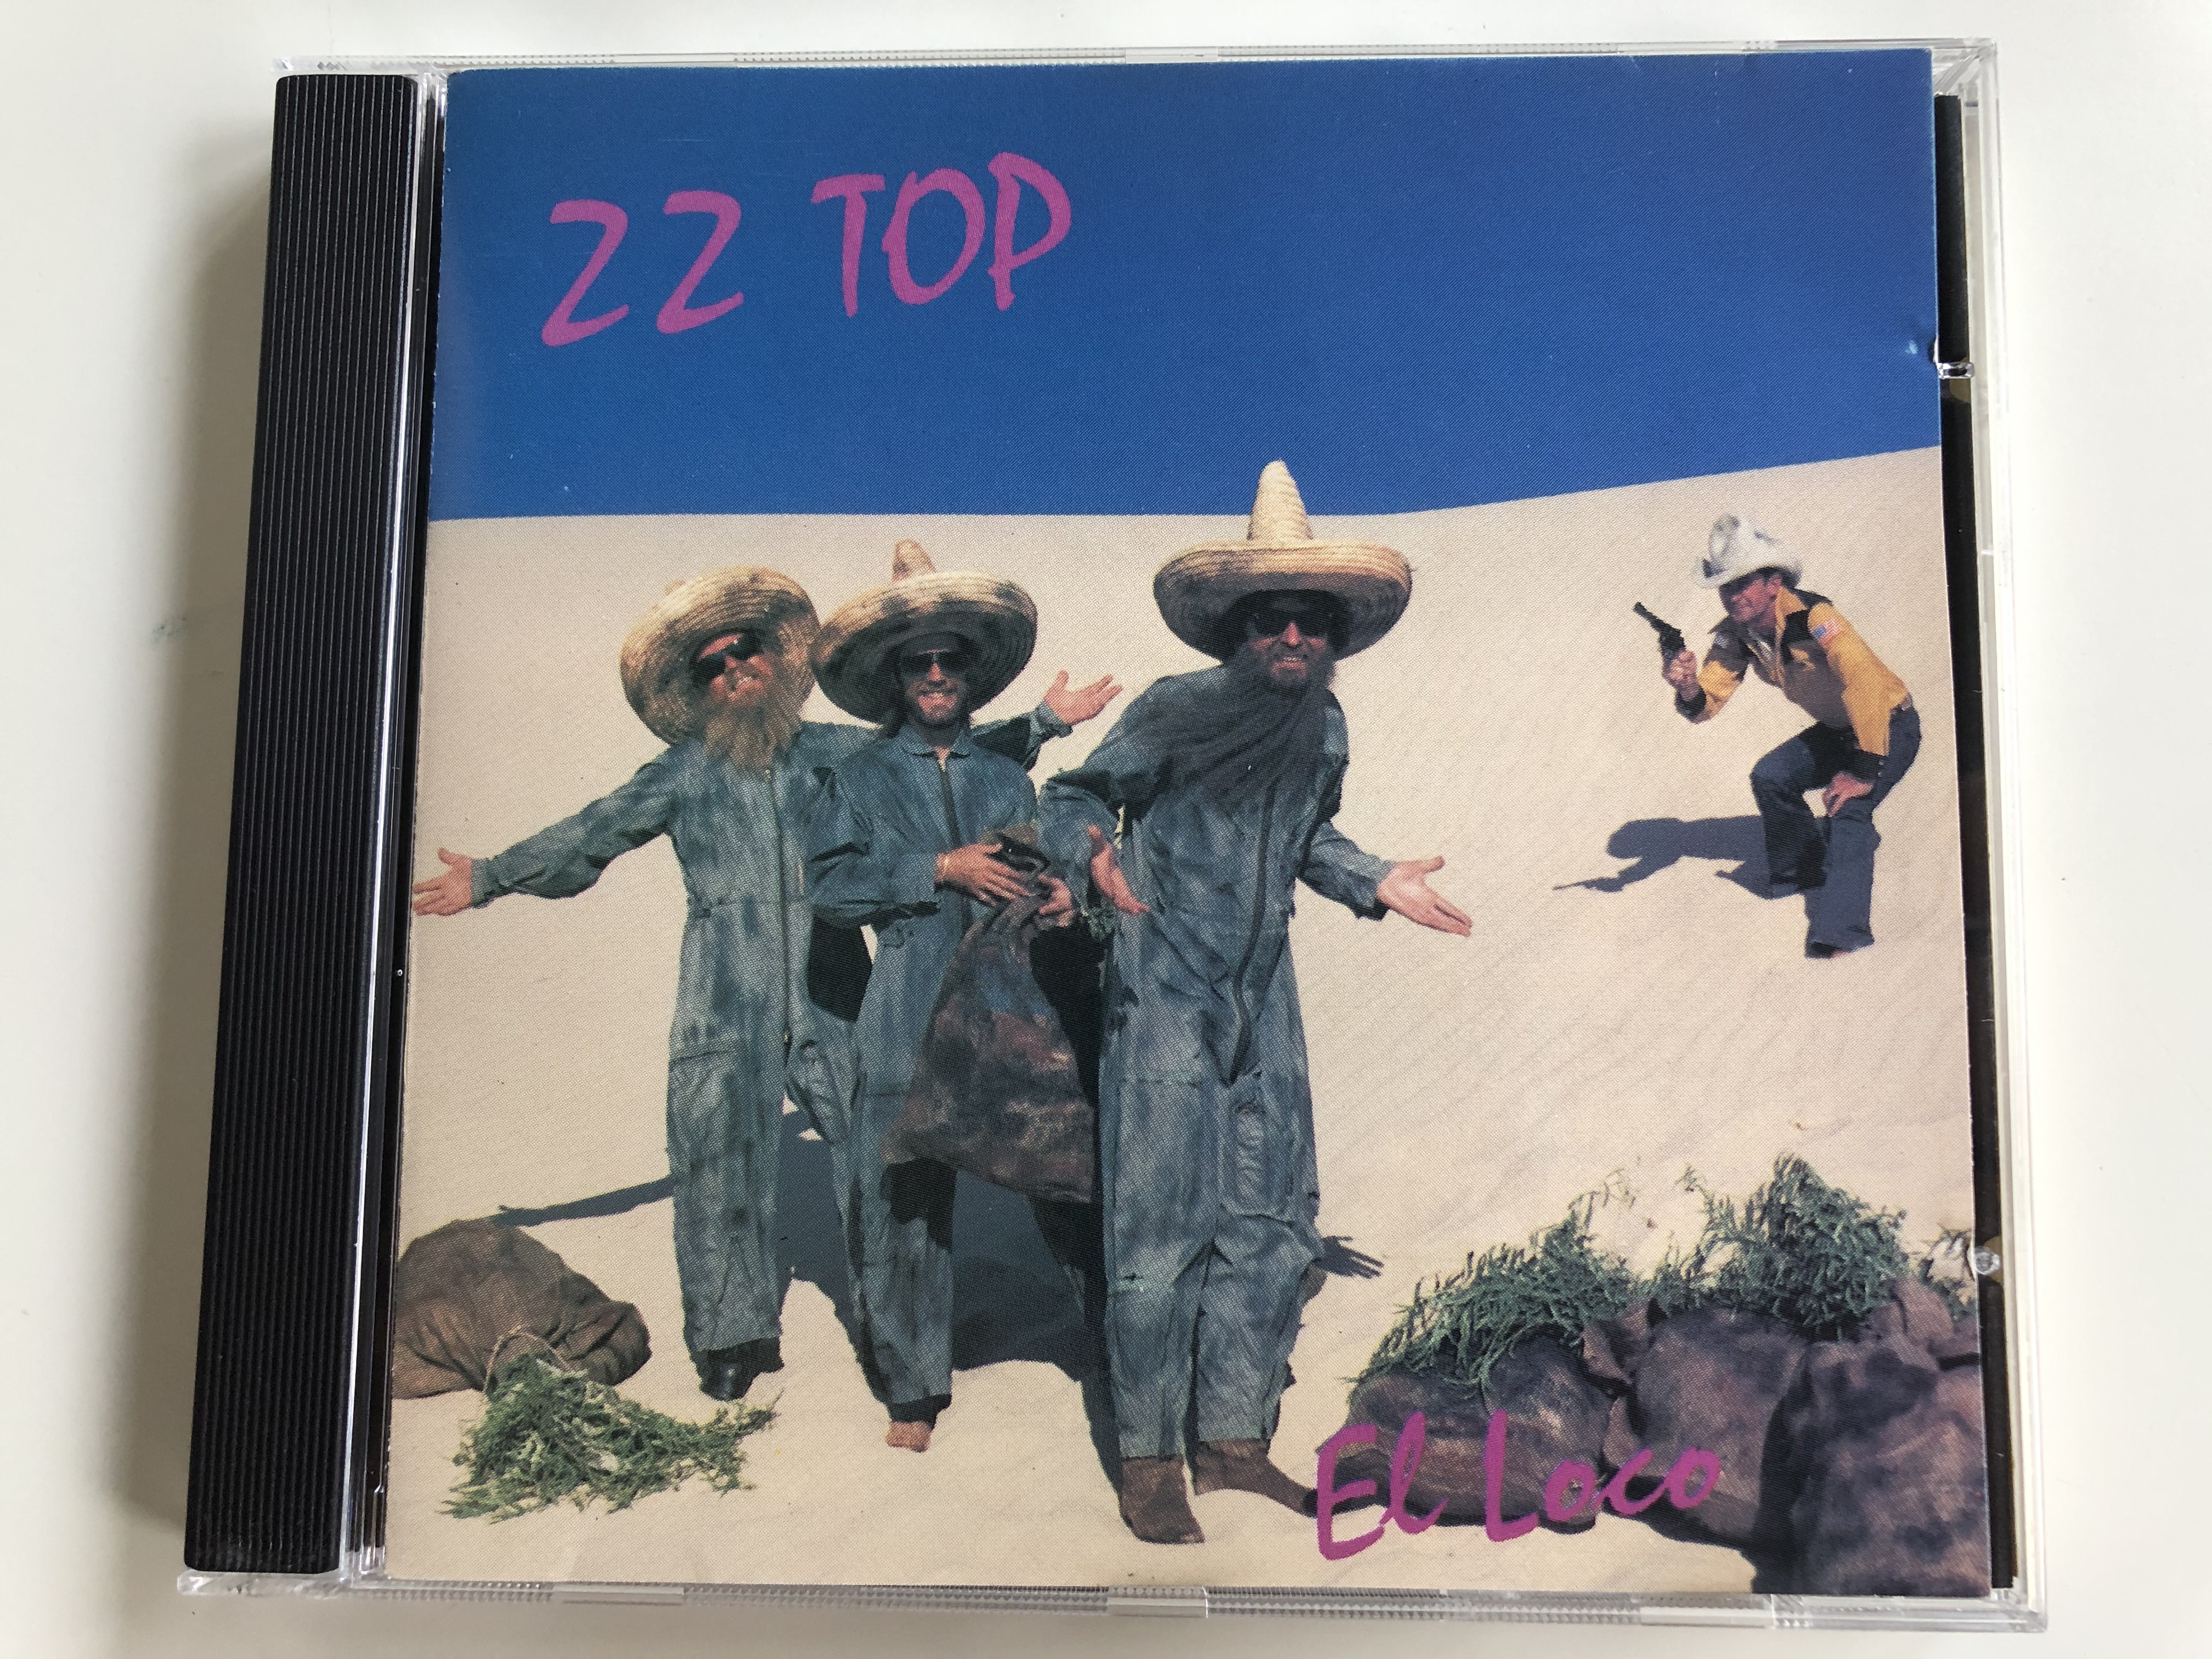 zz-top-el-loco-warner-bros.-records-audio-cd-1981-7599-23593-2-1-.jpg